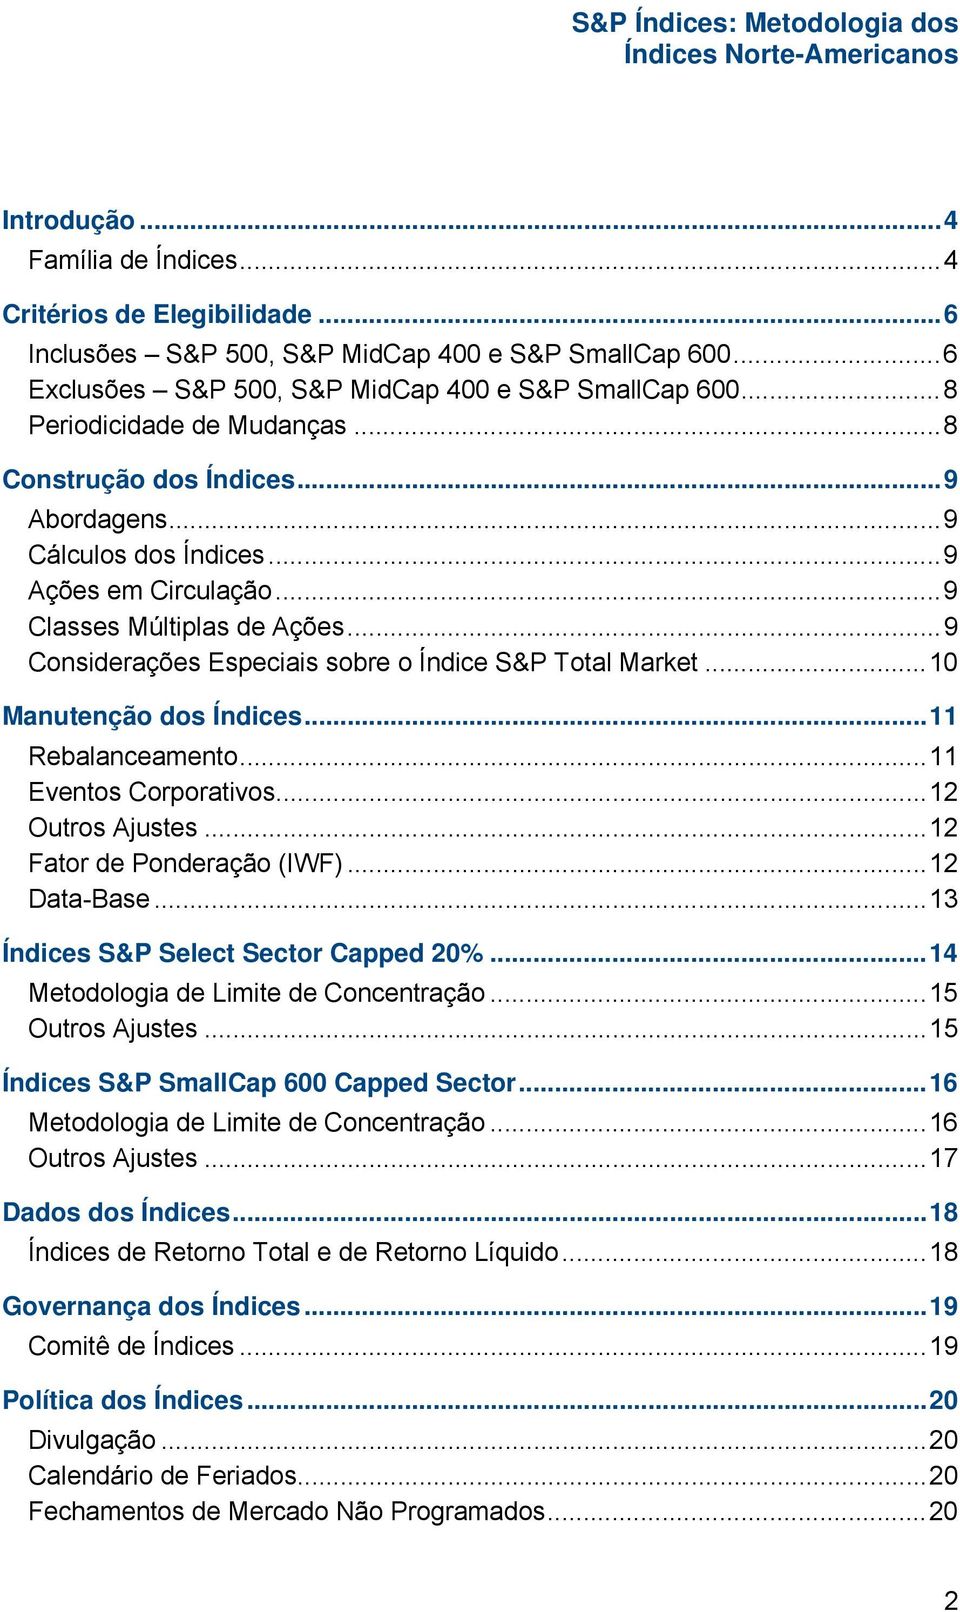 .. 9 Considerações Especiais sobre o Índice S&P Total Market... 10 Manutenção dos Índices... 11 Rebalanceamento... 11 Eventos Corporativos... 12 Outros Ajustes... 12 Fator de Ponderação (IWF).